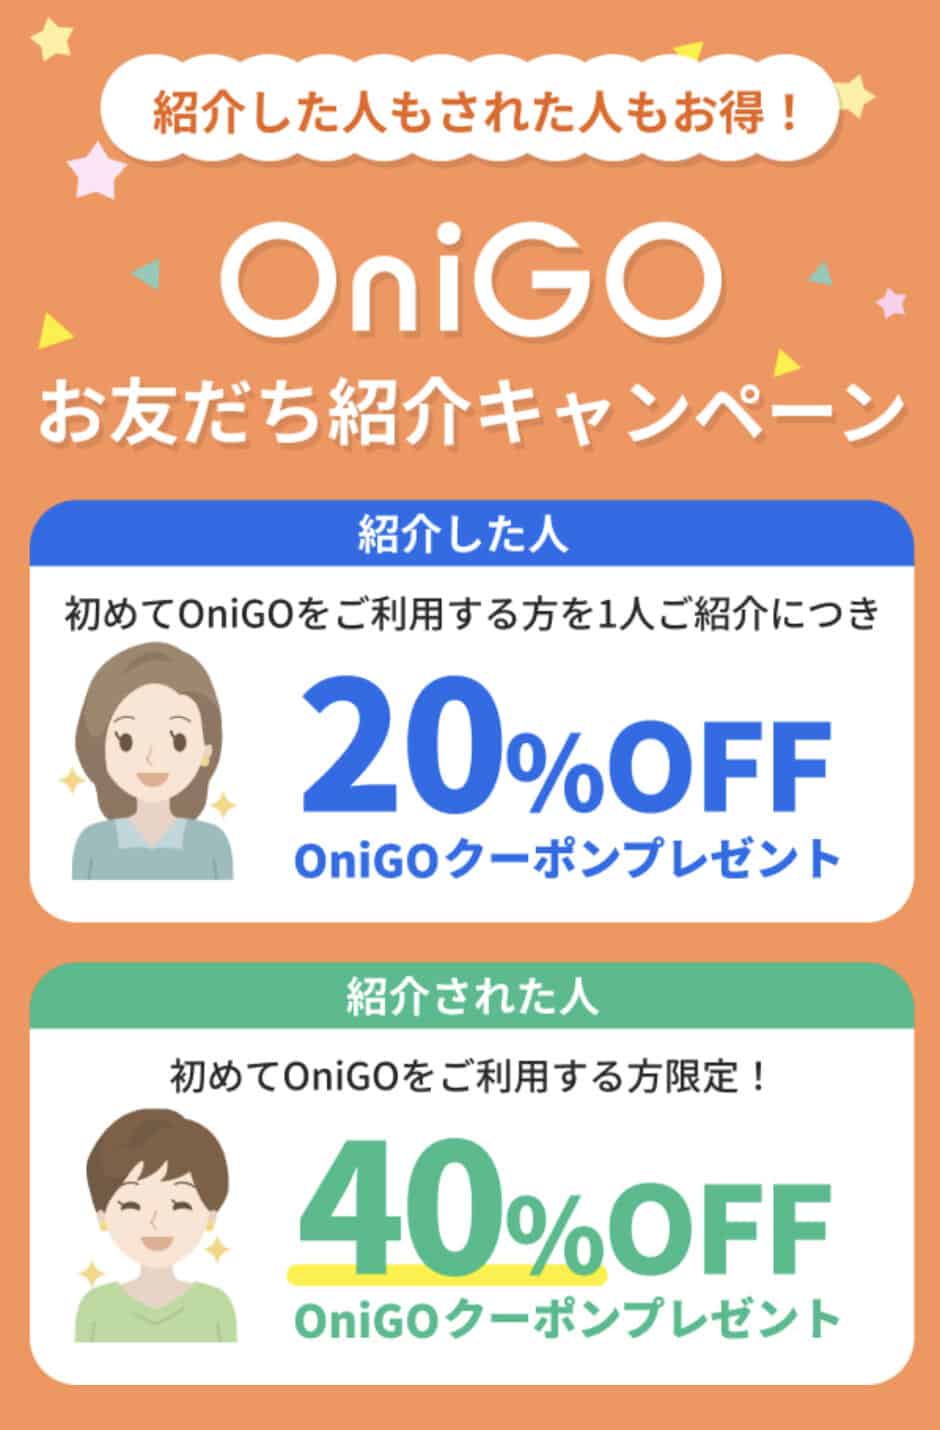 【友達紹介限定】OniGO(オニゴー)「40%OFFクーポン」招待リンク